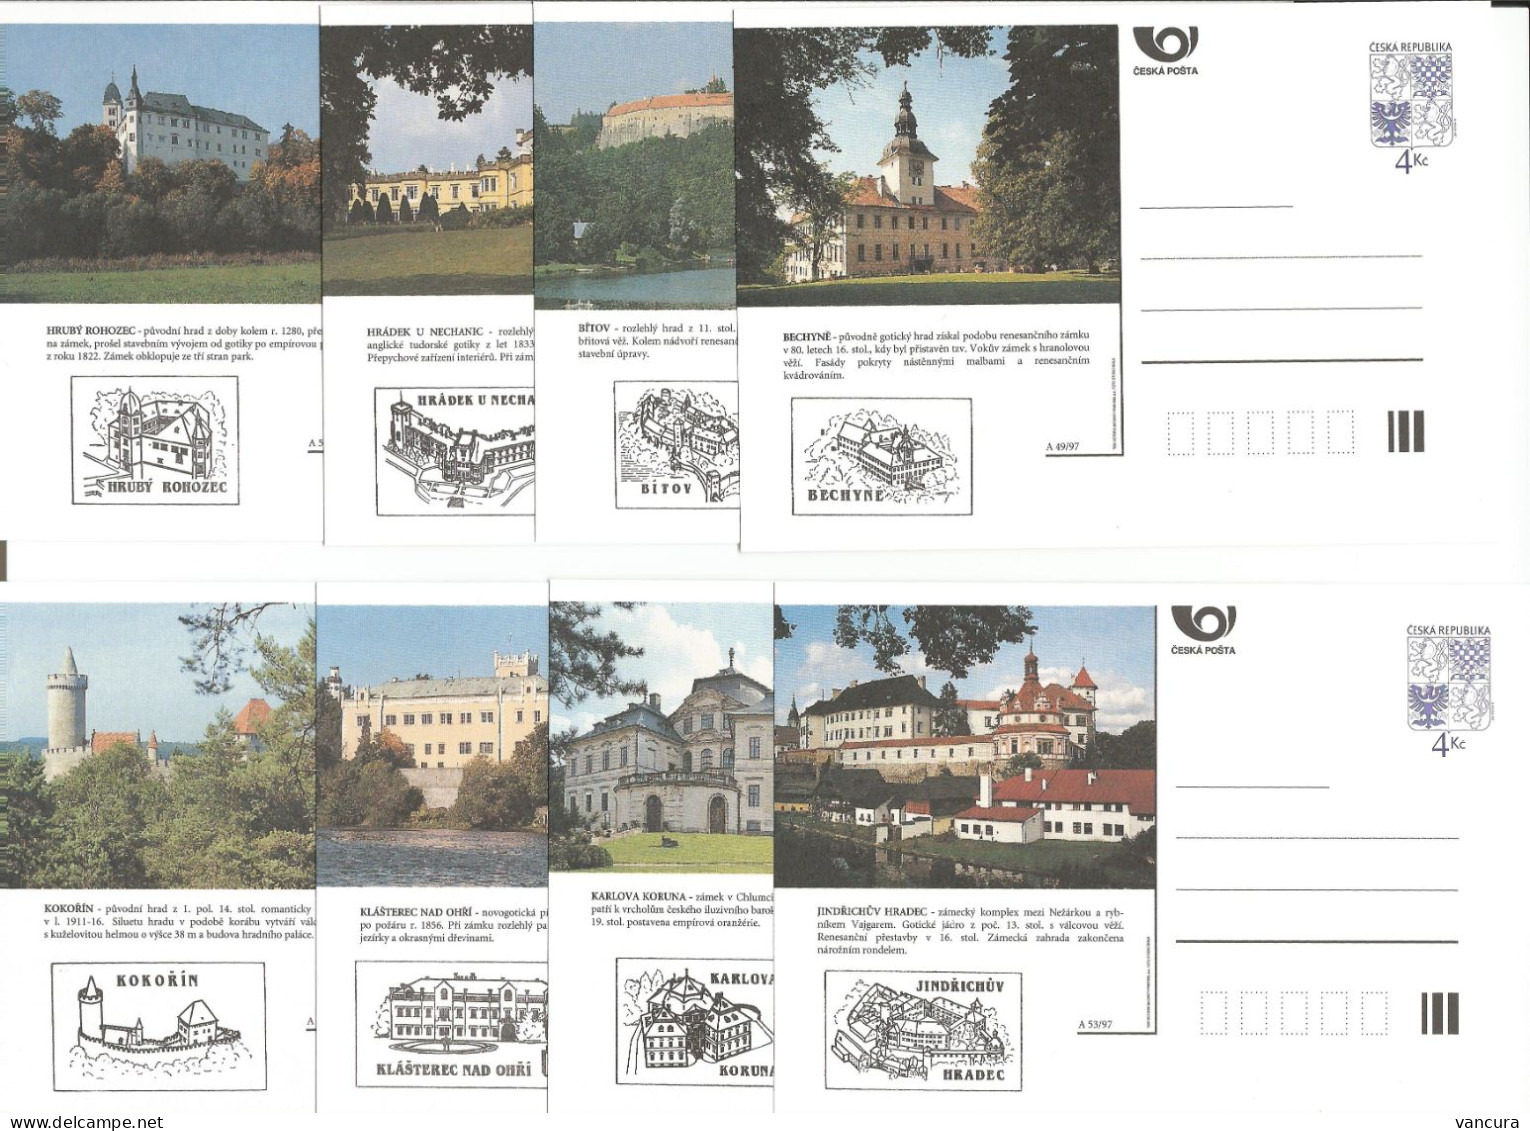 CDV 25 B - Czech Republic Castles And Mansions 1997 - Castillos